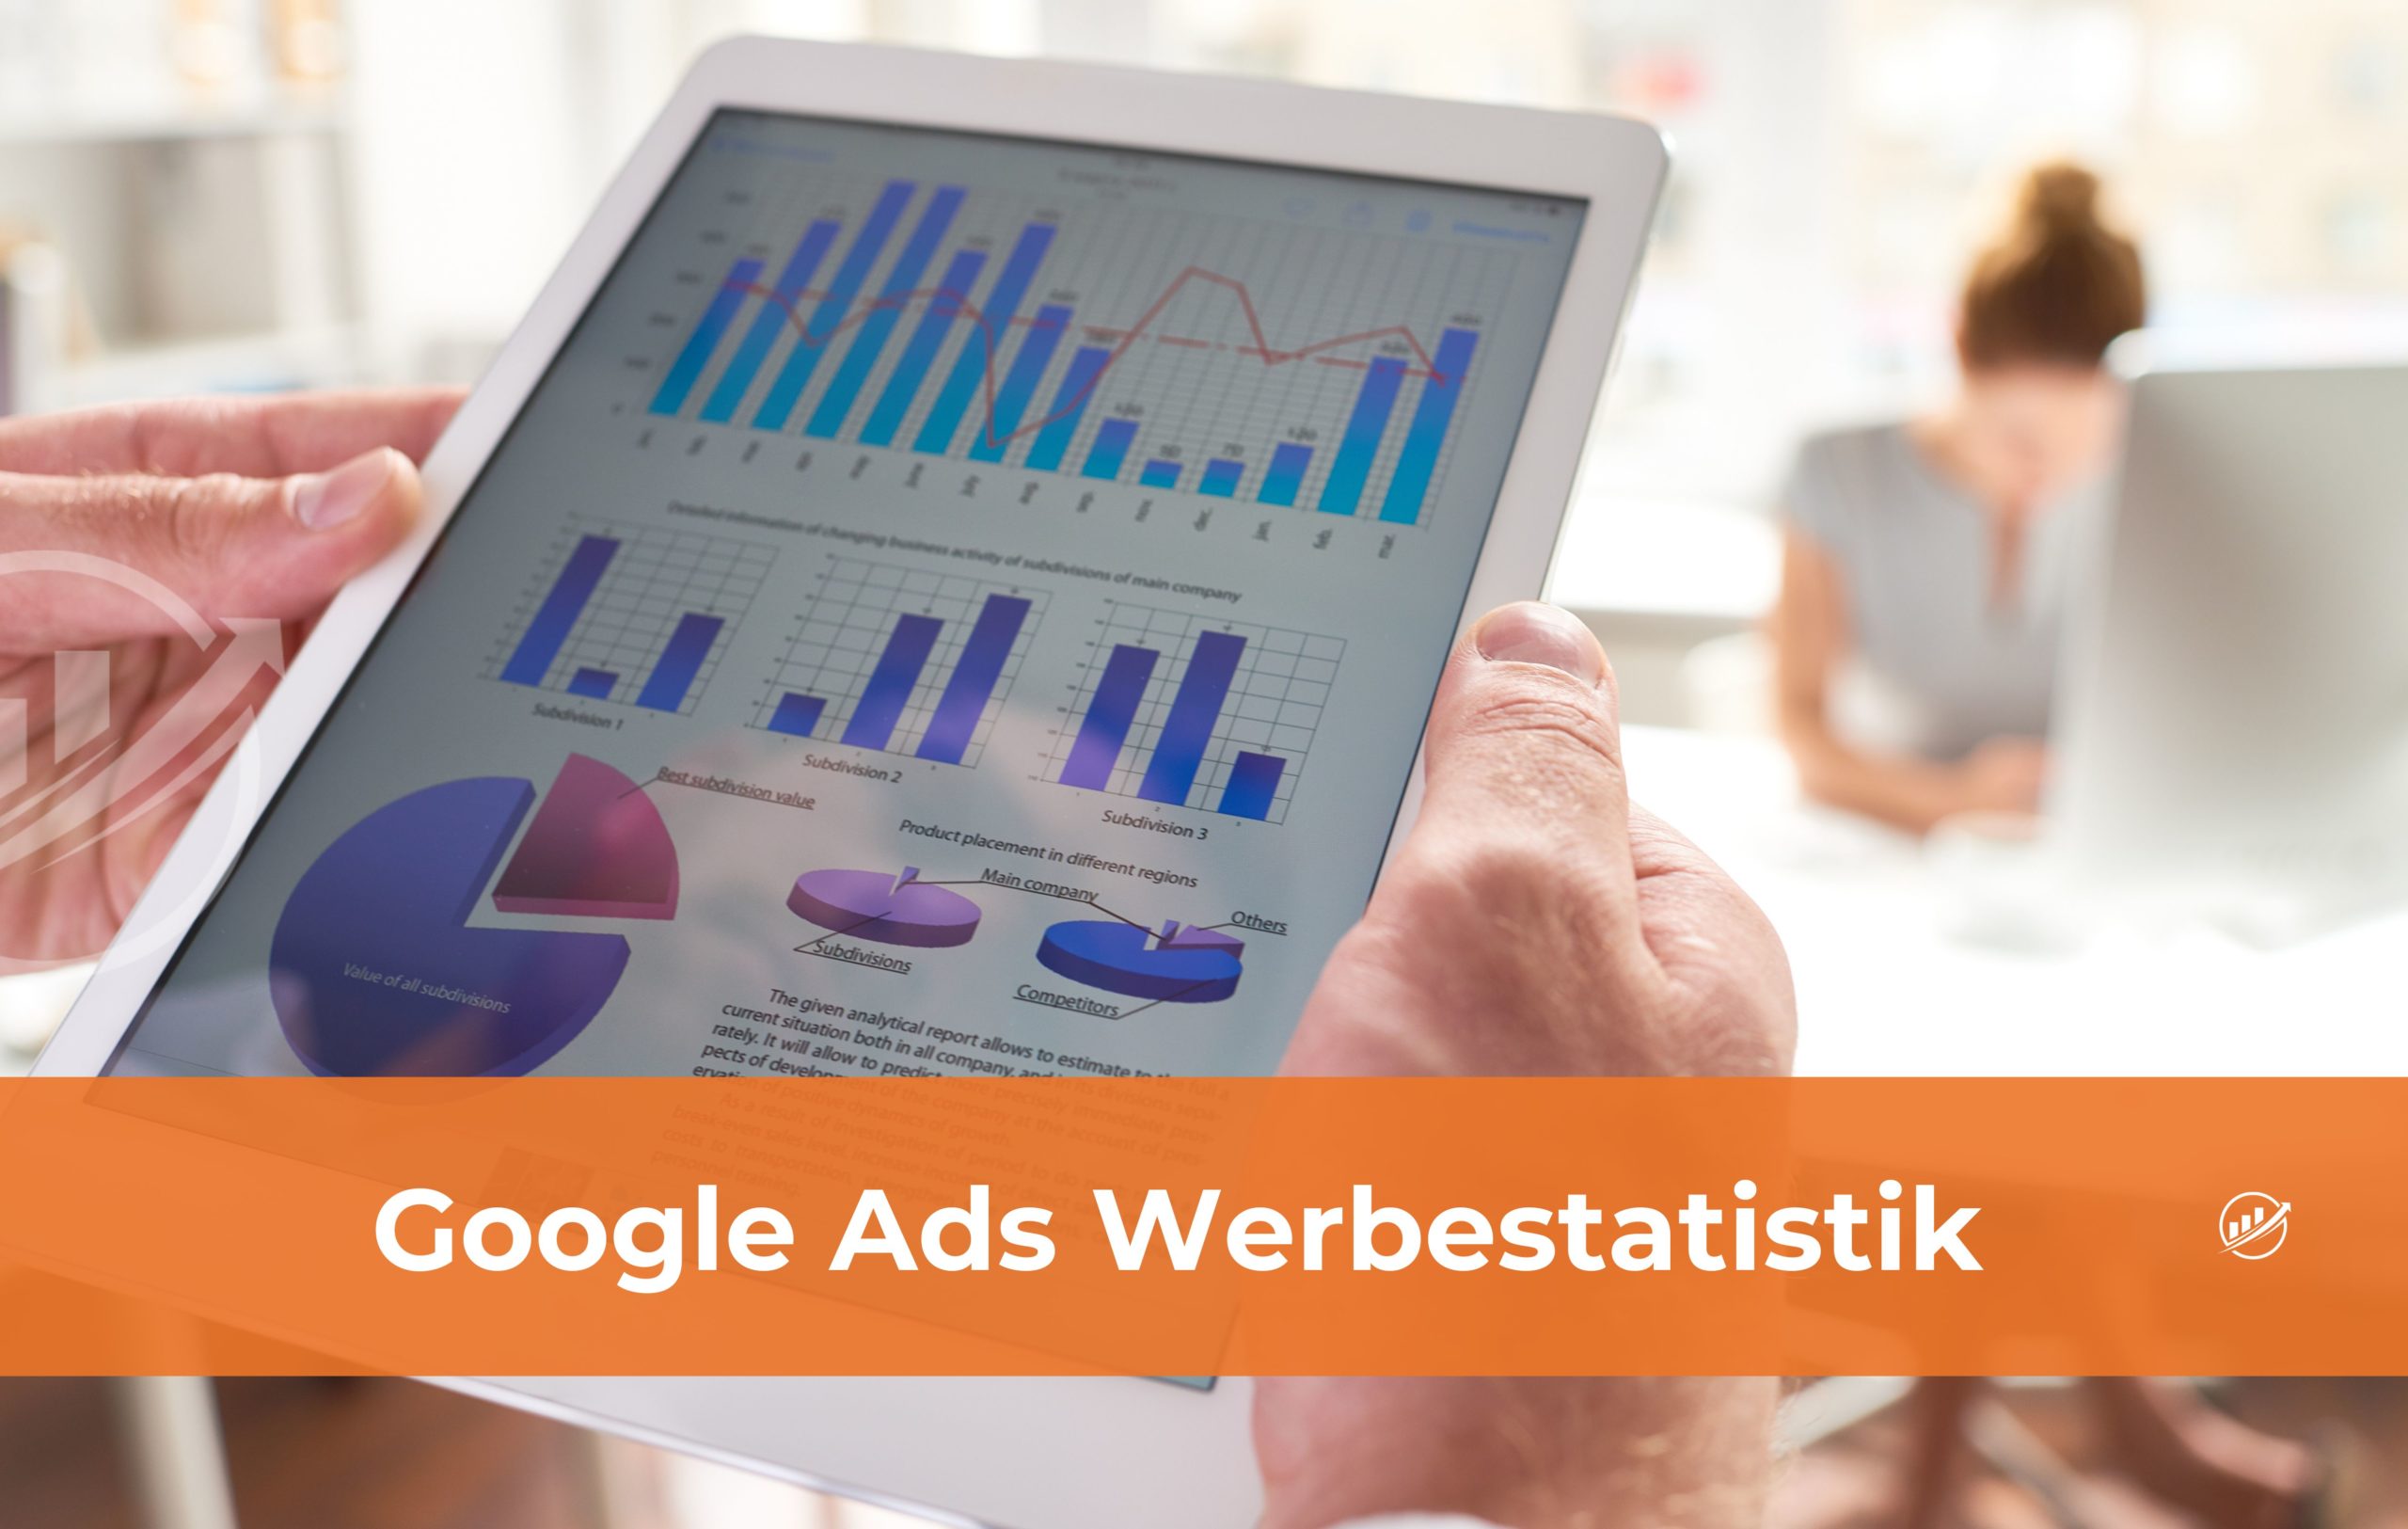 Google Ads Werbestatistik